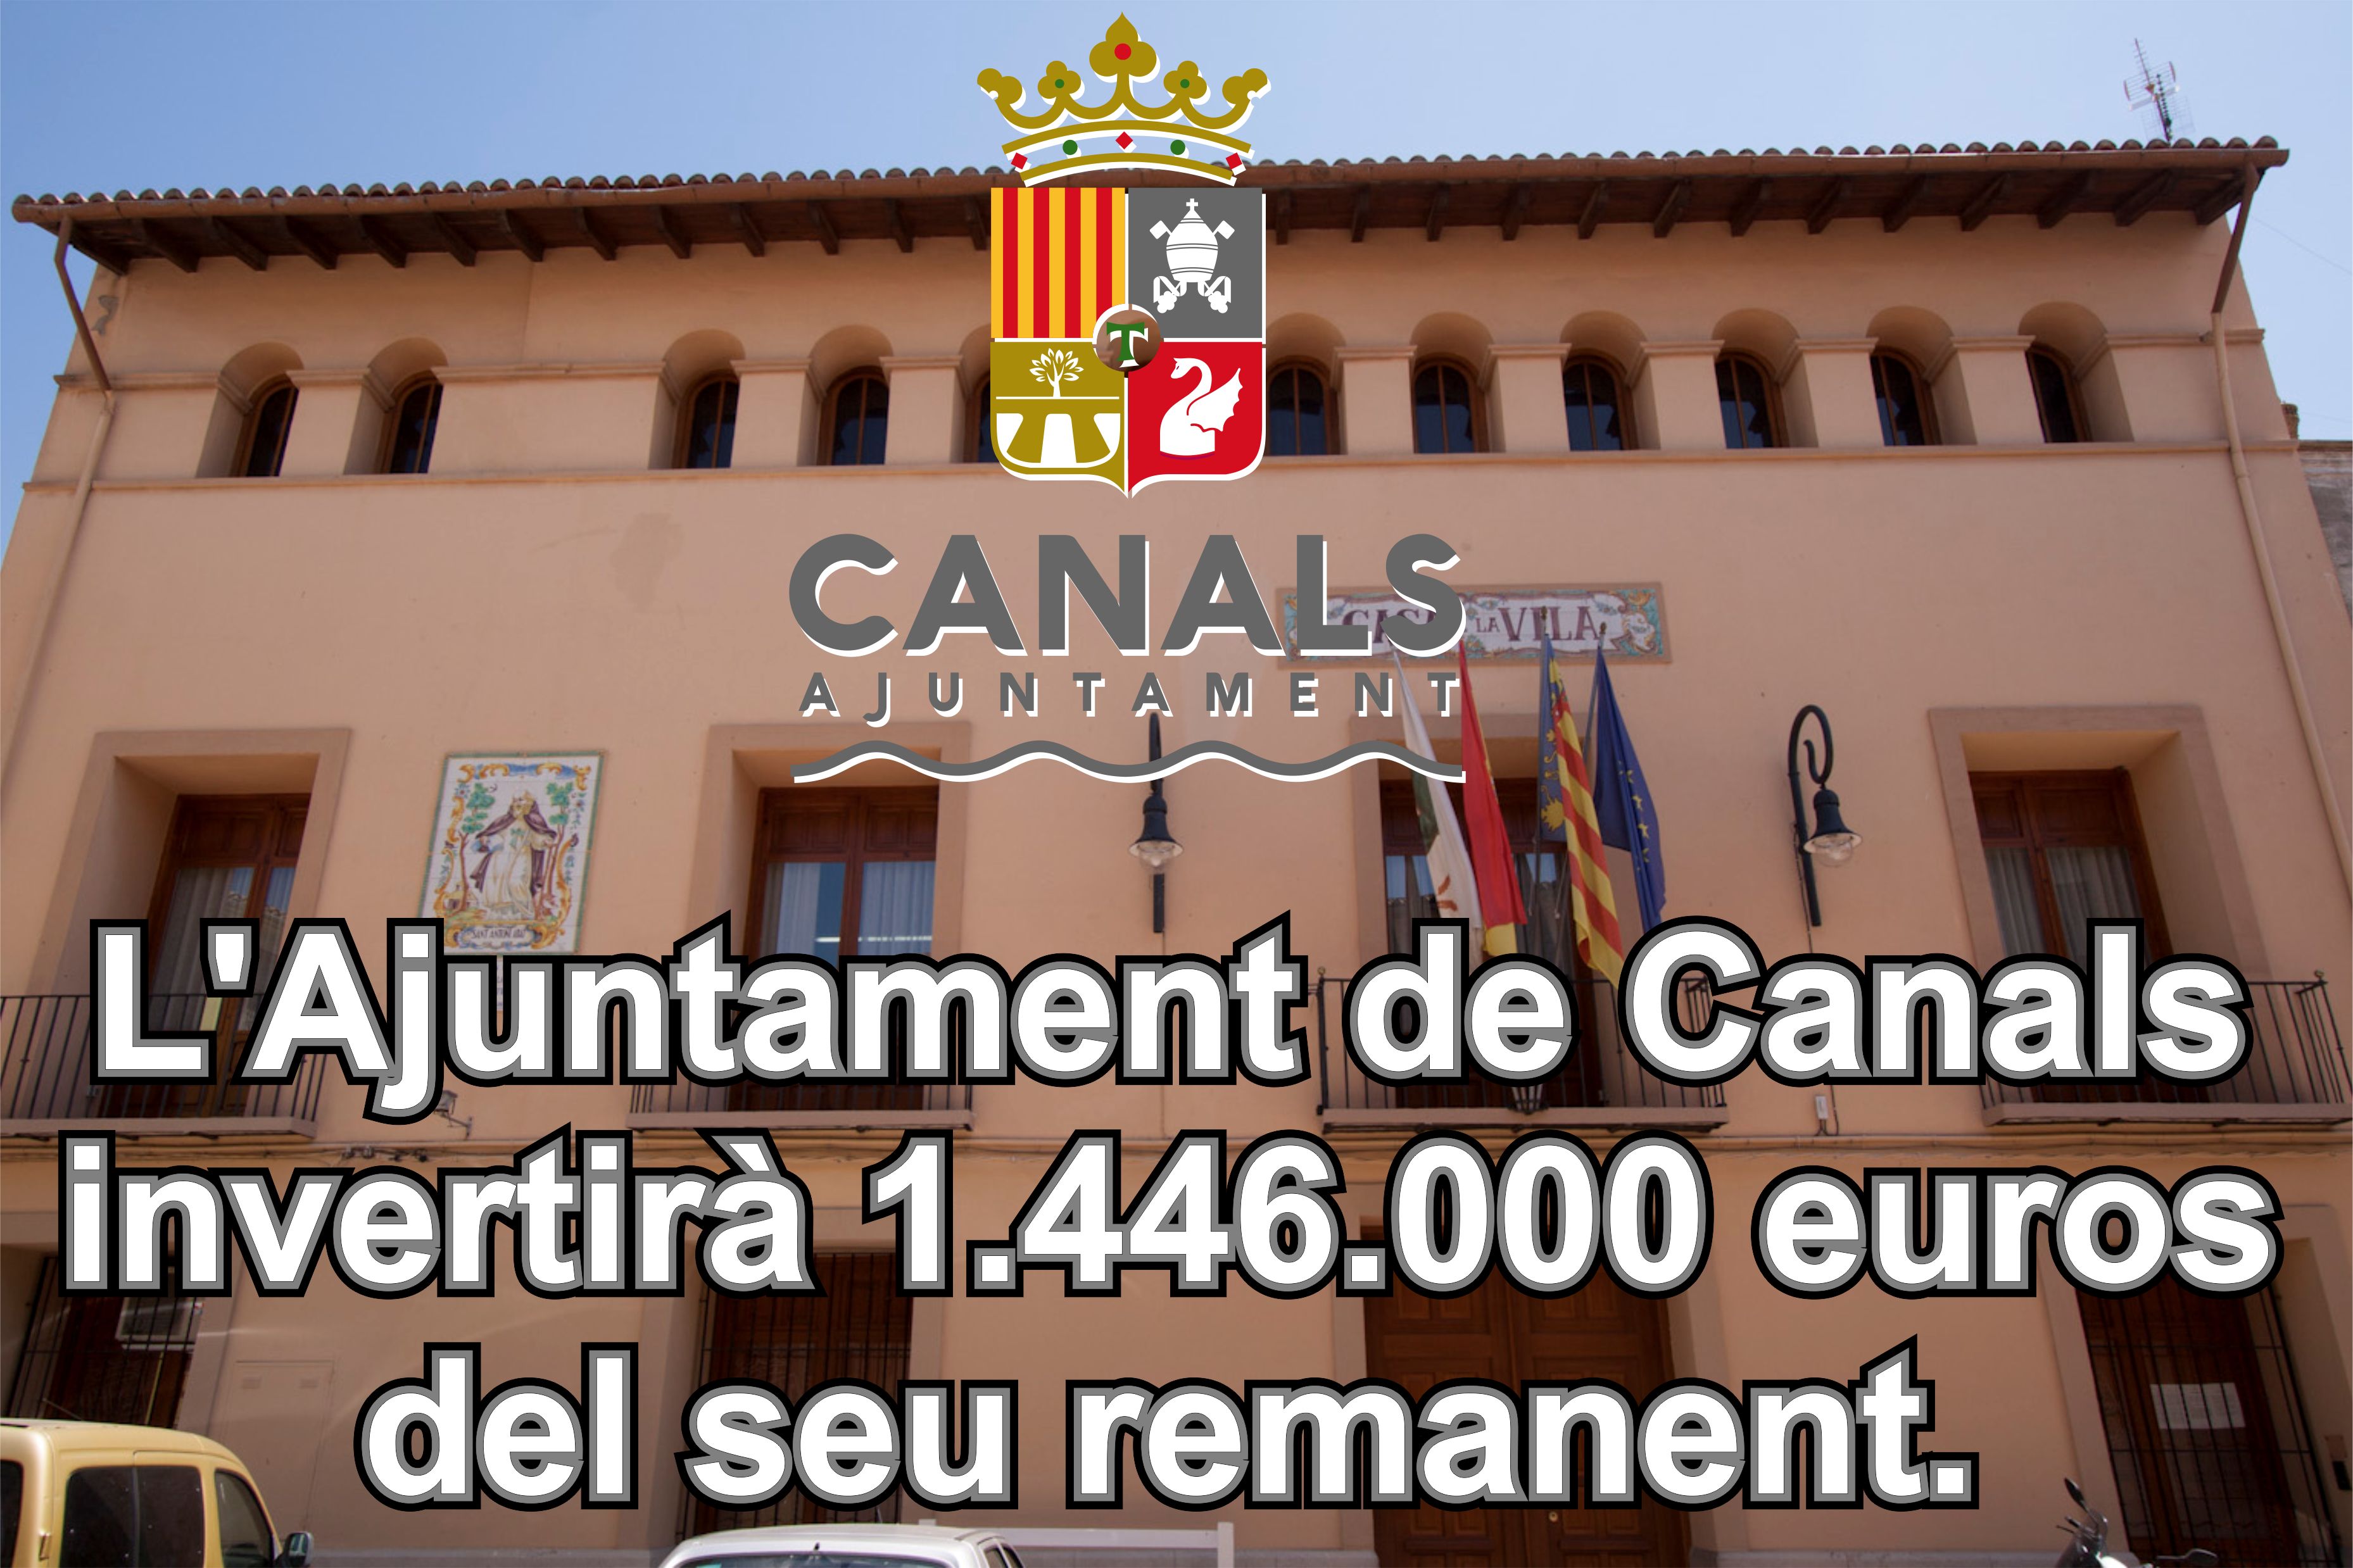 2017.05.05 Canals remanent. Ajuntament de Canals